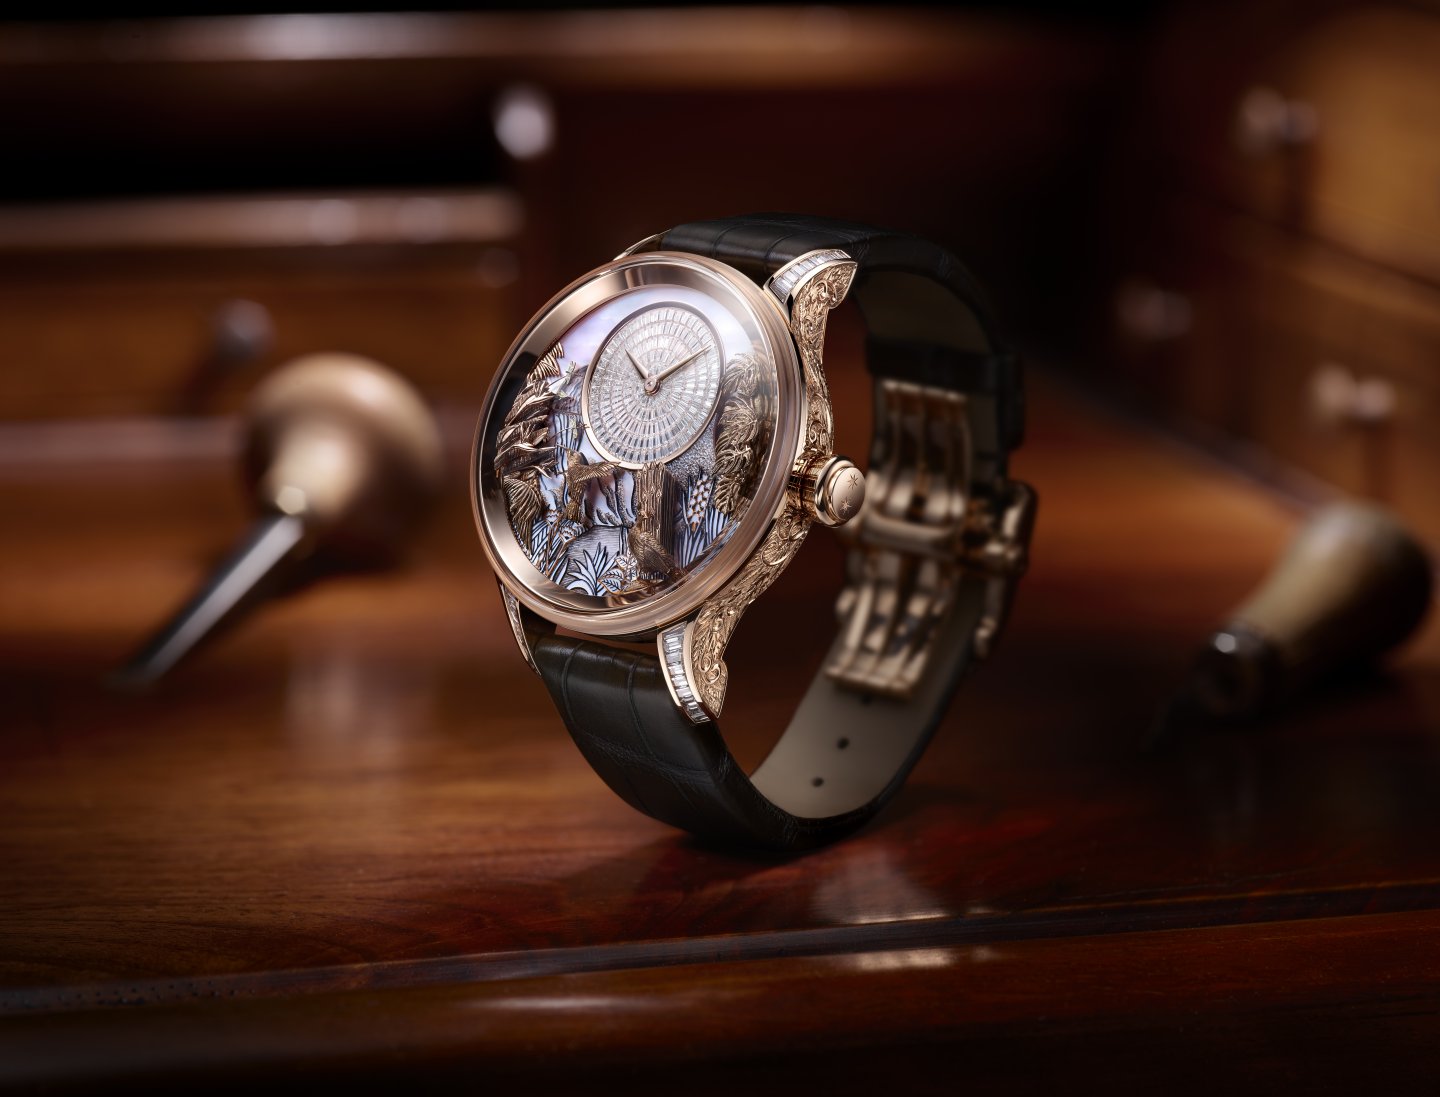 ジャケ・ドローはエシカルな時計製造を強化し、「責任ある宝飾品業のための協議会 」 への正式加盟が認められました